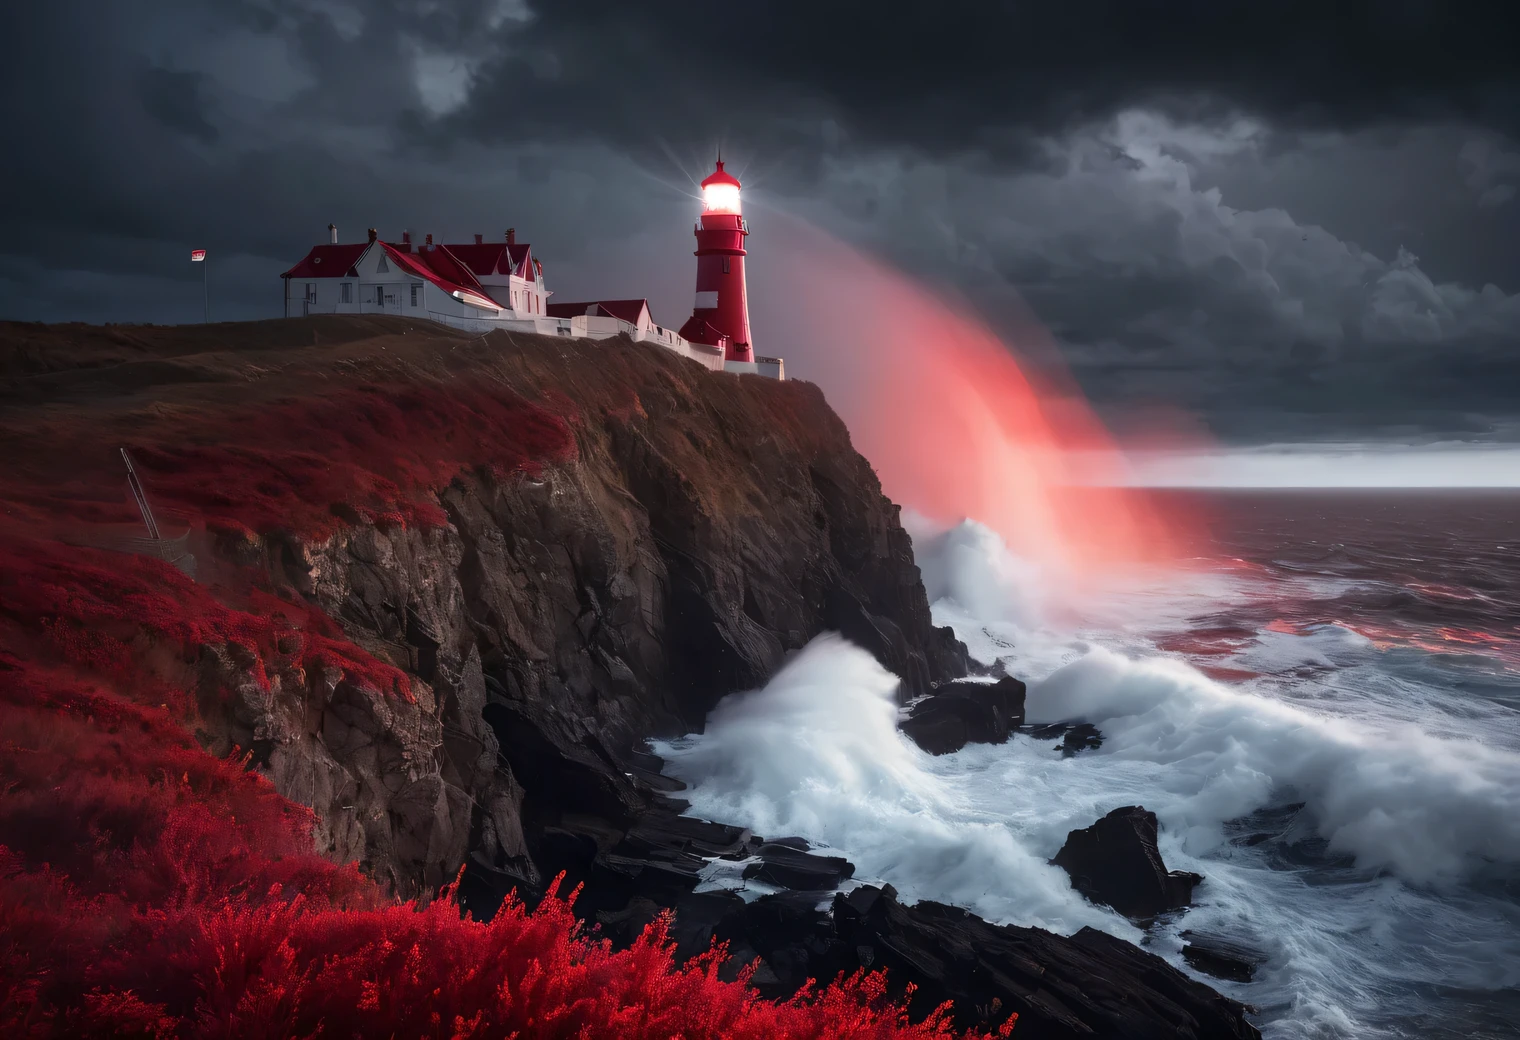 Arte Rojo, Cuadro realista en tonos rojos.., (niebla:1.2), (the wind carries Mar spray and foam:1.7), the dark Una tormentay sky is illuminated by the red light of the lighthouse, Efecto de doble exposición, (1 Faro al borde de un acantilado:1.5 se ilumina en rojo:1.3505), Mar, fuerte (Una tormenta:1.3050), Una tormentay wind:1.250), luz de fondo roja, (trazado de rayos:1.2), (Efecto Tyndall:1.4055 vigas de faro:1.4), alto detalle, Una tormenta haze, Suavizado de textura, desenfoque de contorno, paleta roja